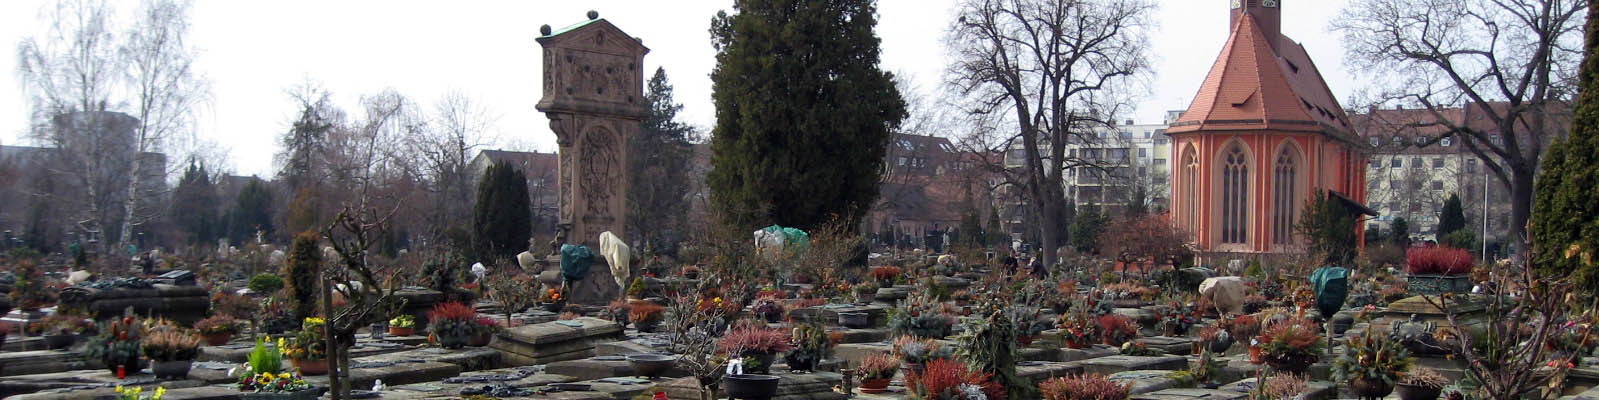 Bild Johannisfriedhof